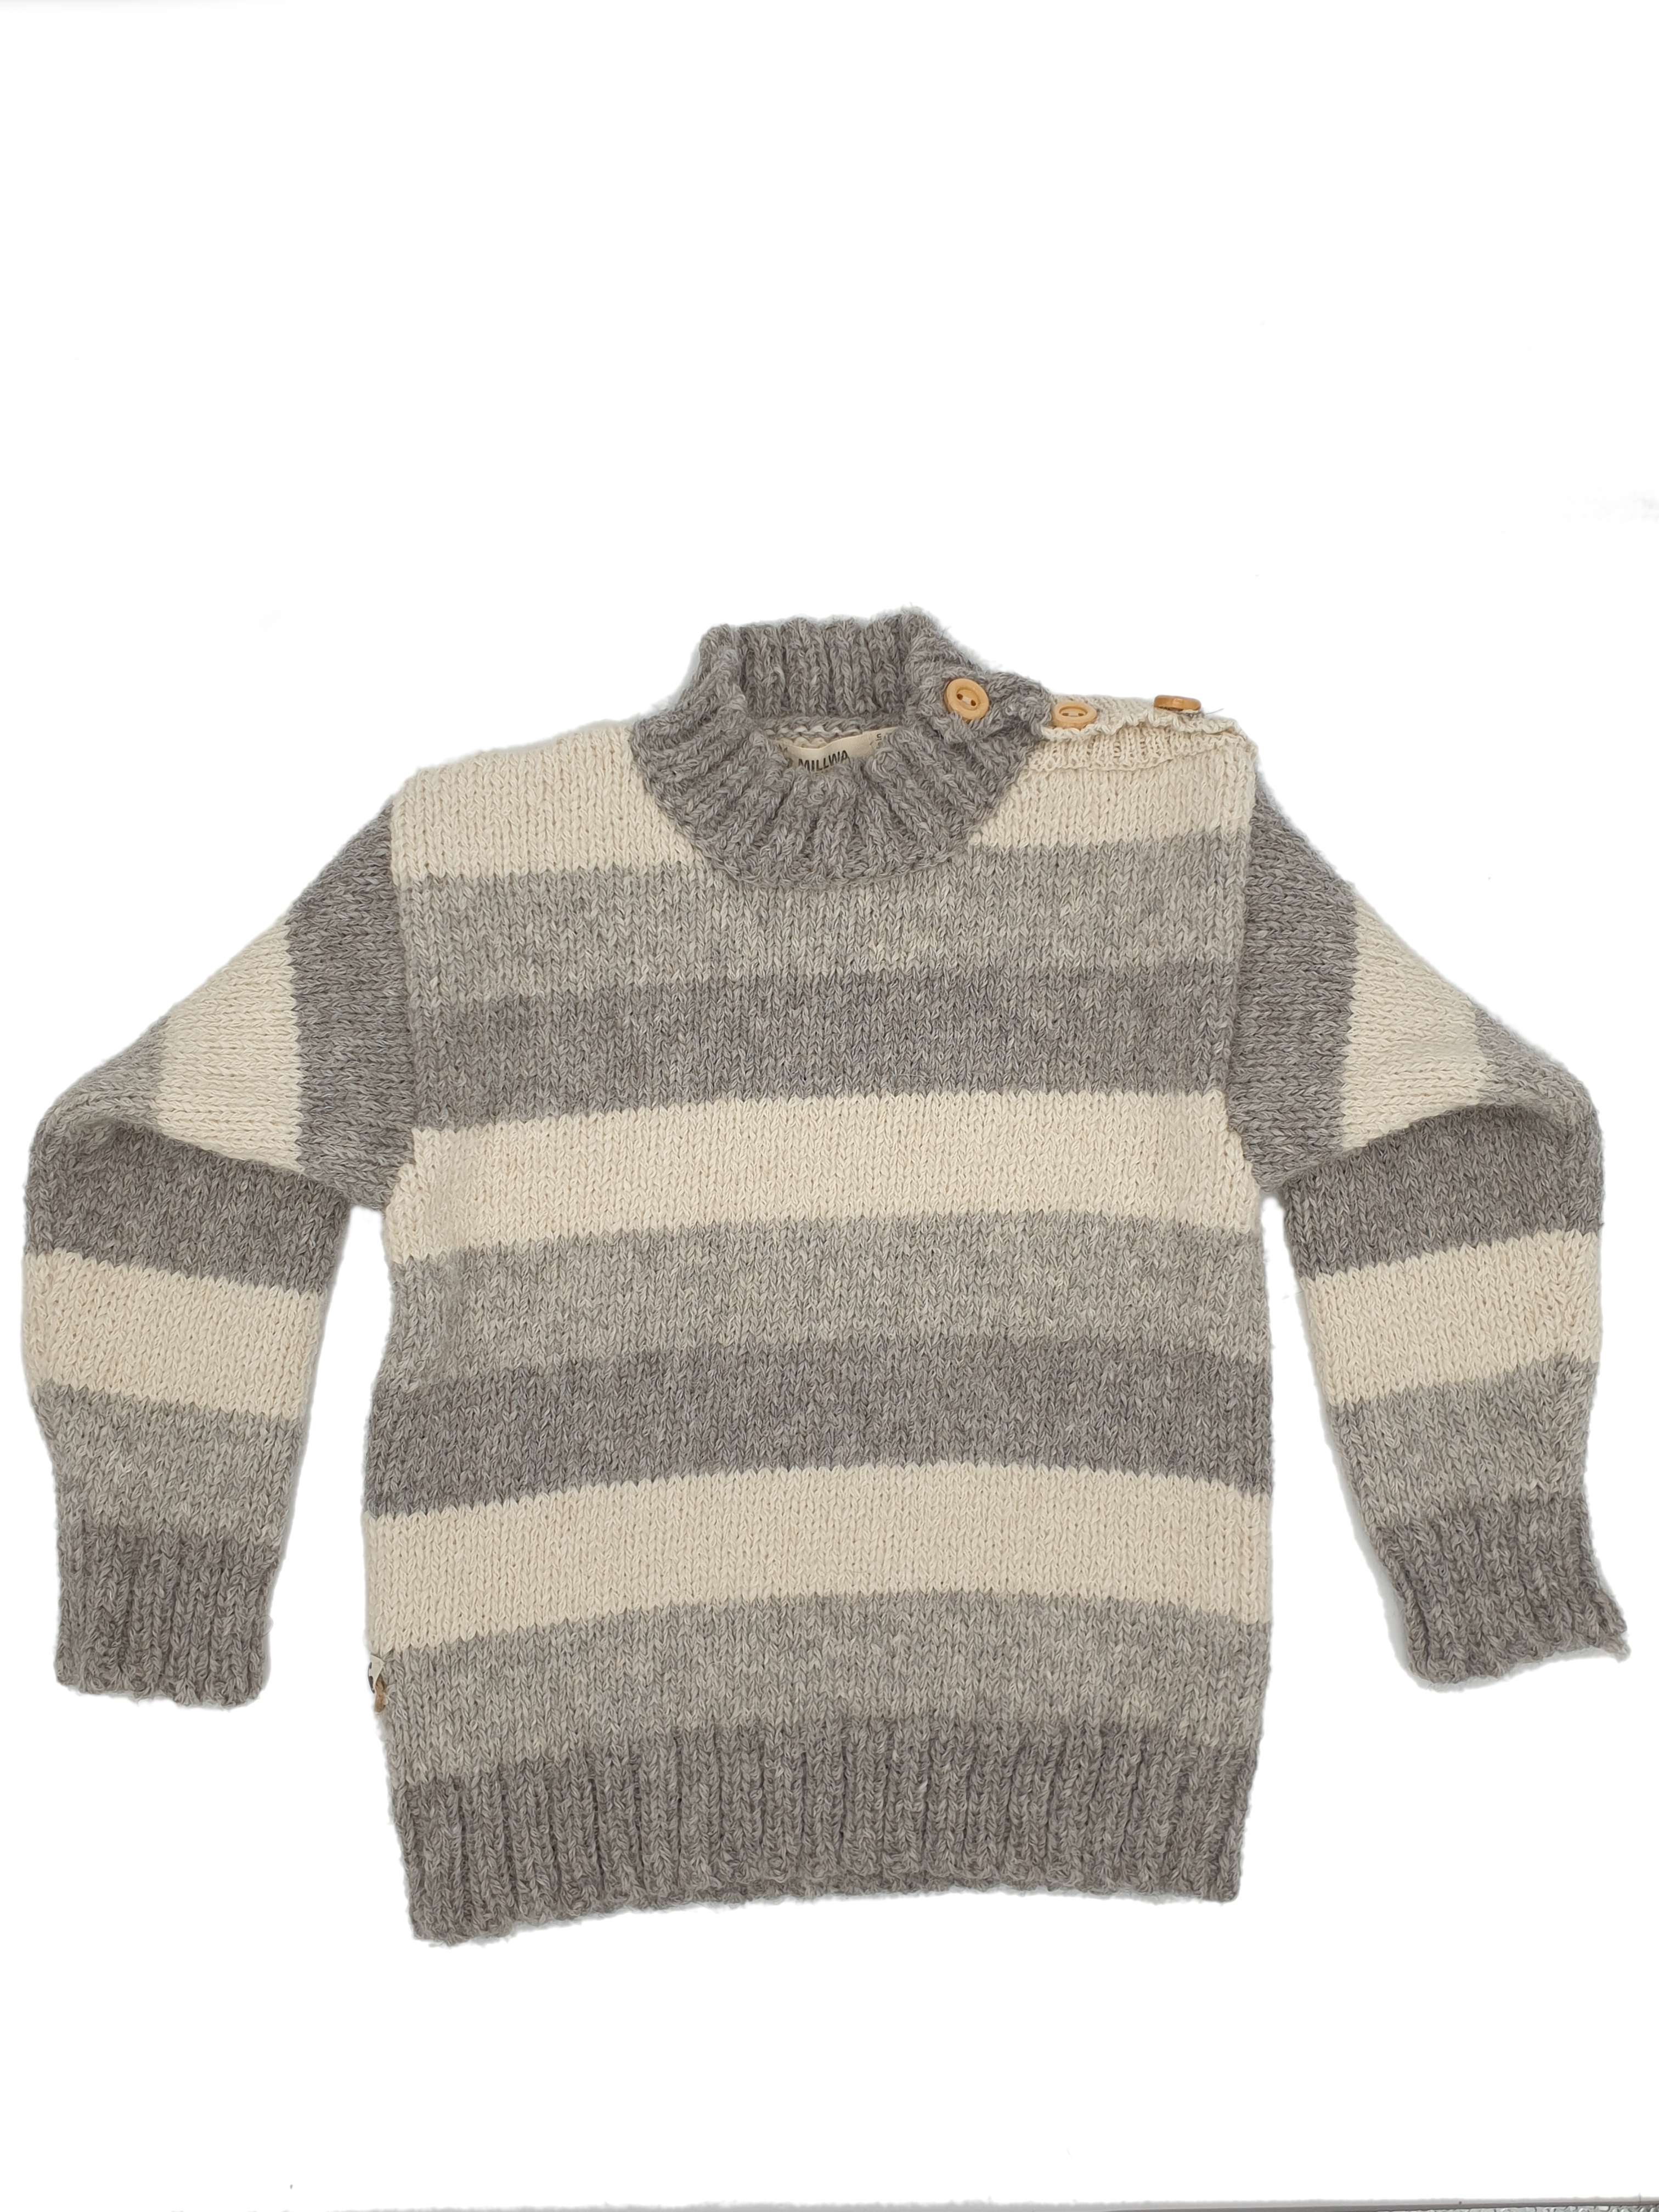 Hochwertige Pullover für Kinder im edlem Blockstreifendesign aus feinster Babyalpakawolle in 3 verschiedenen Farben